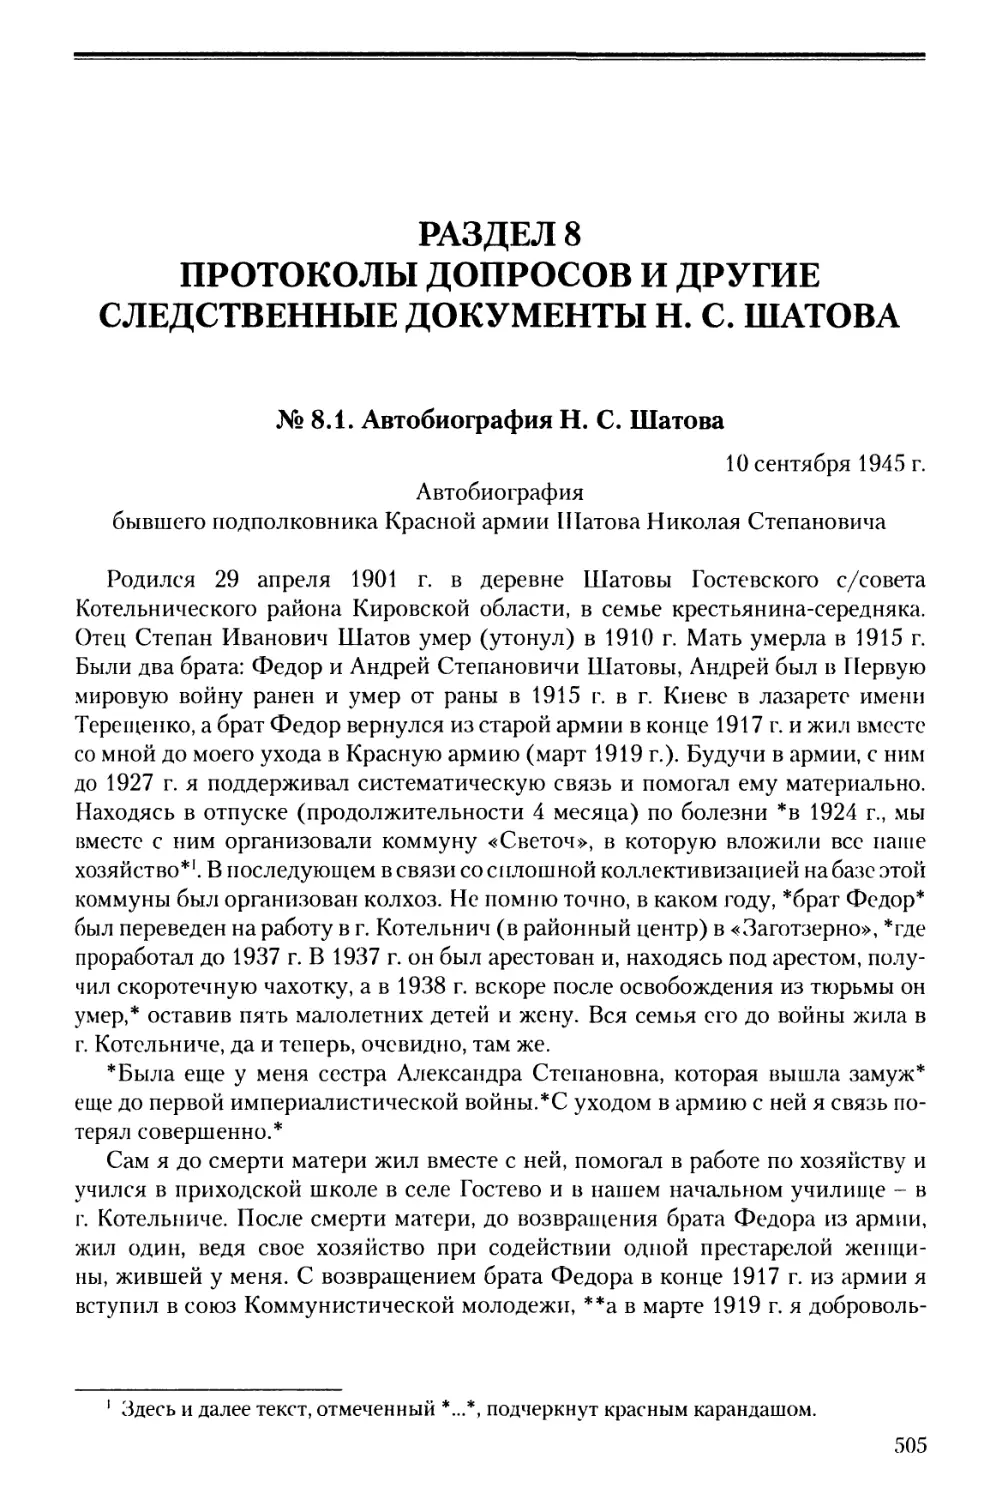 Раздел 8. Протоколы допросов и другие следственные документы Н.С. Шатова